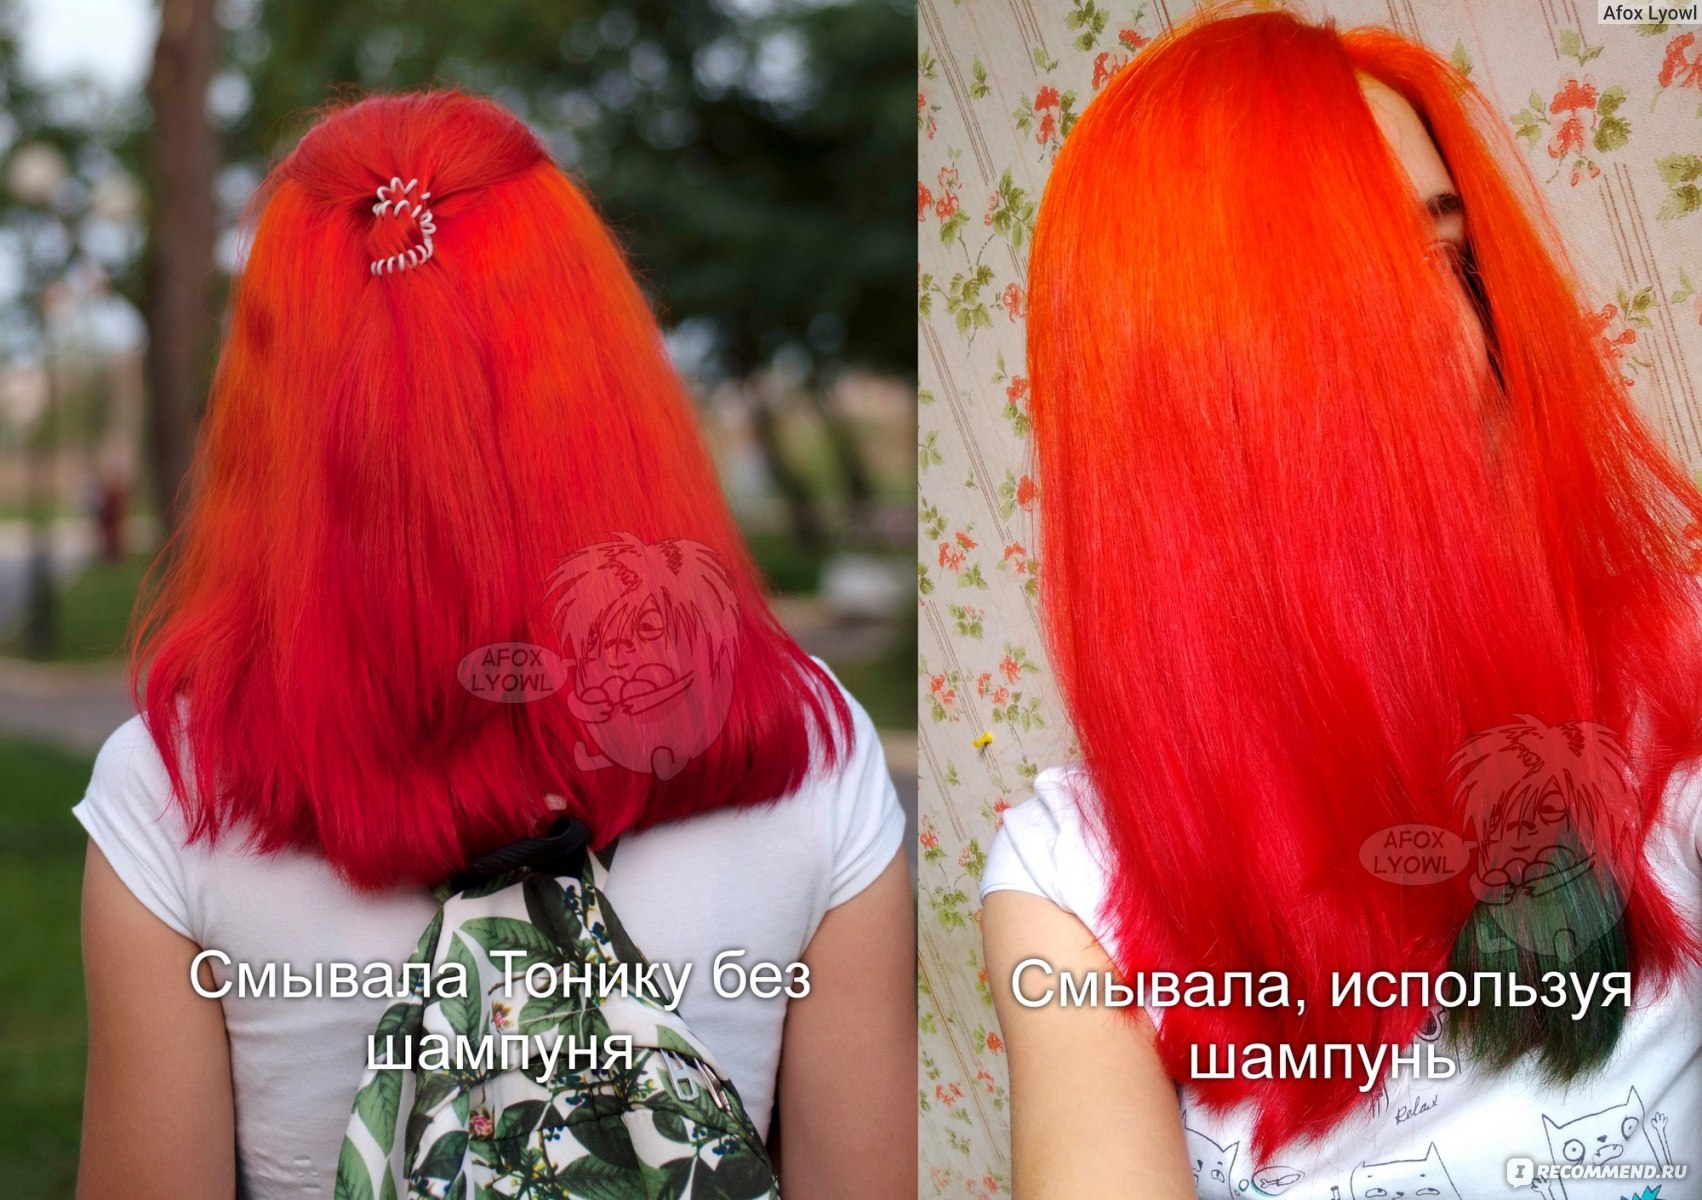 Красные волосы смываются